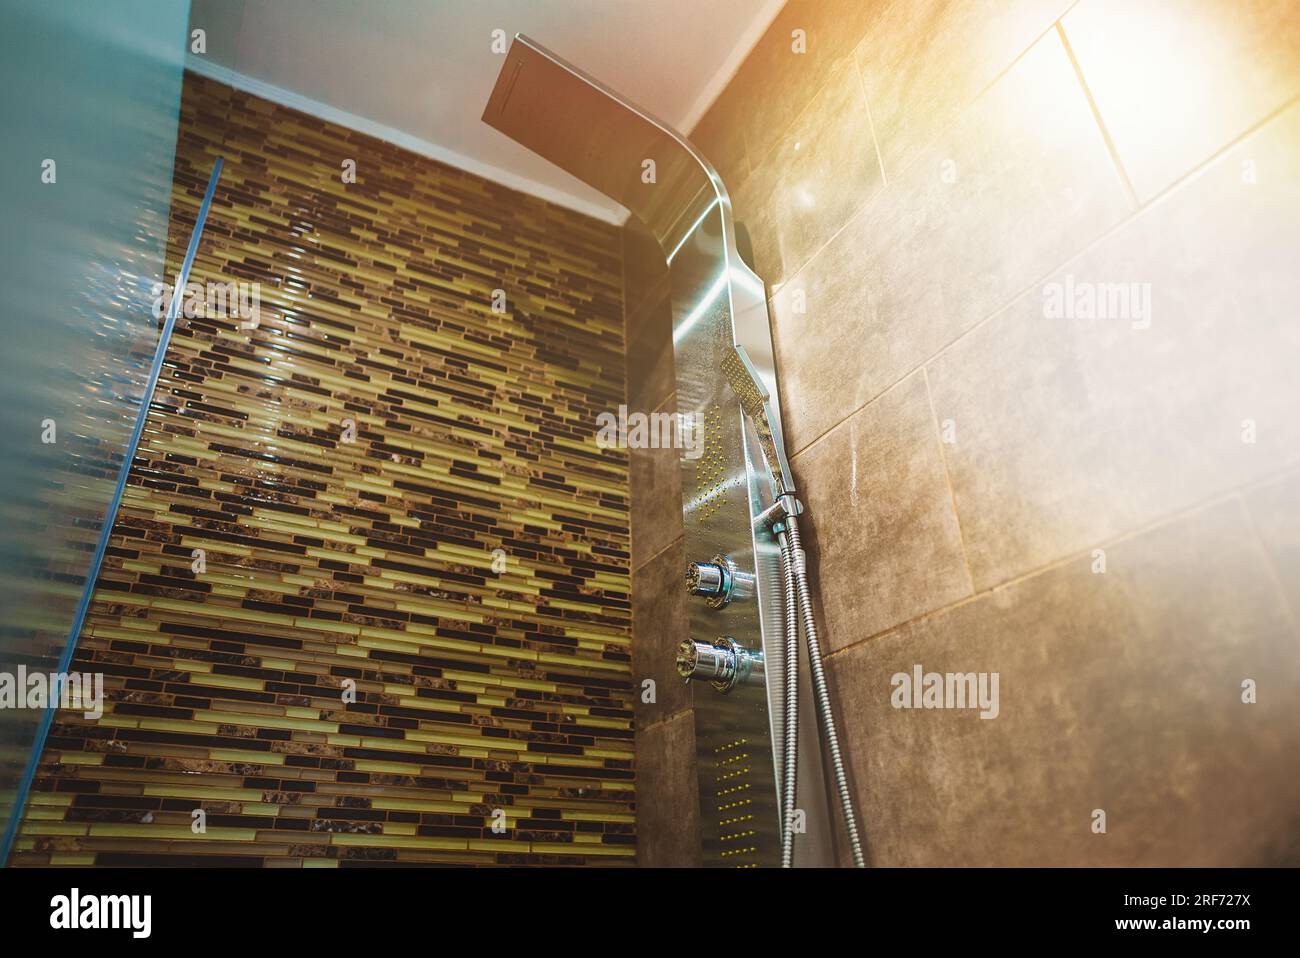 Modern shower panel in tiled bathroom. Stock Photo